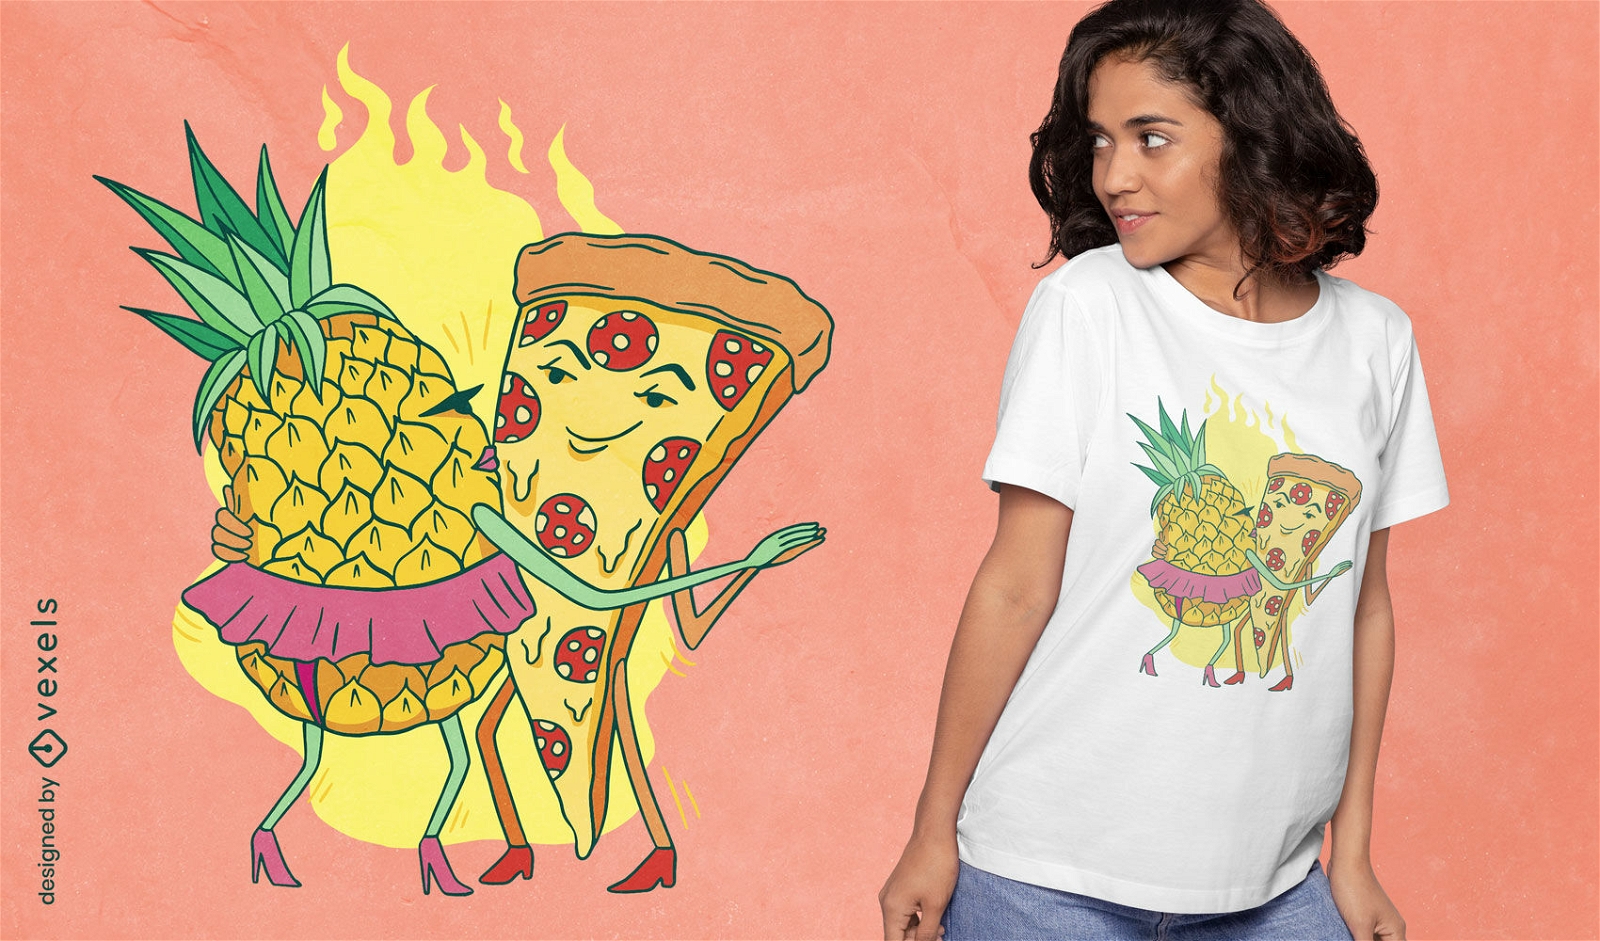 Dise?o de camiseta de baile de pizza y pi?a.